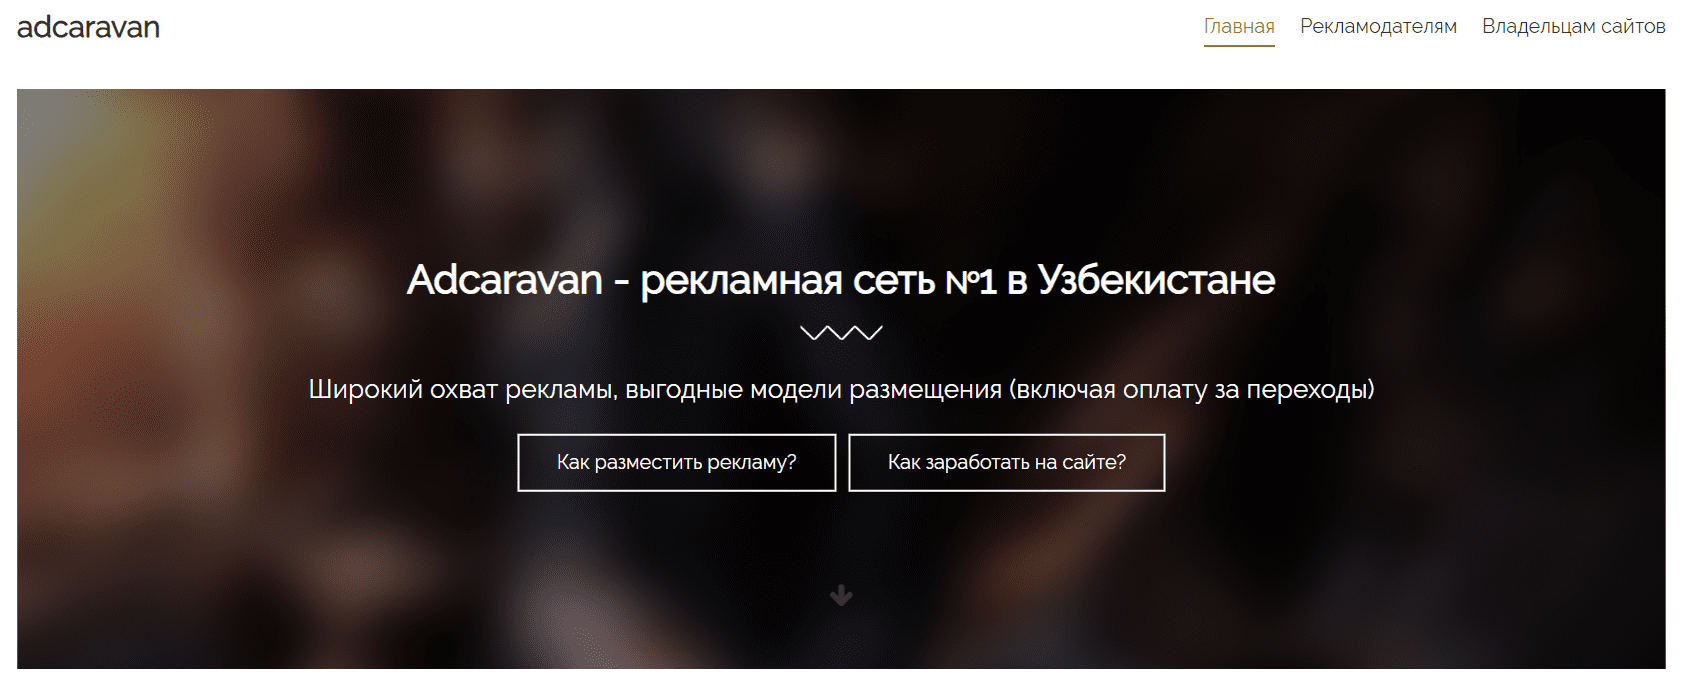 Aadcaravan.uz - официальный сайт